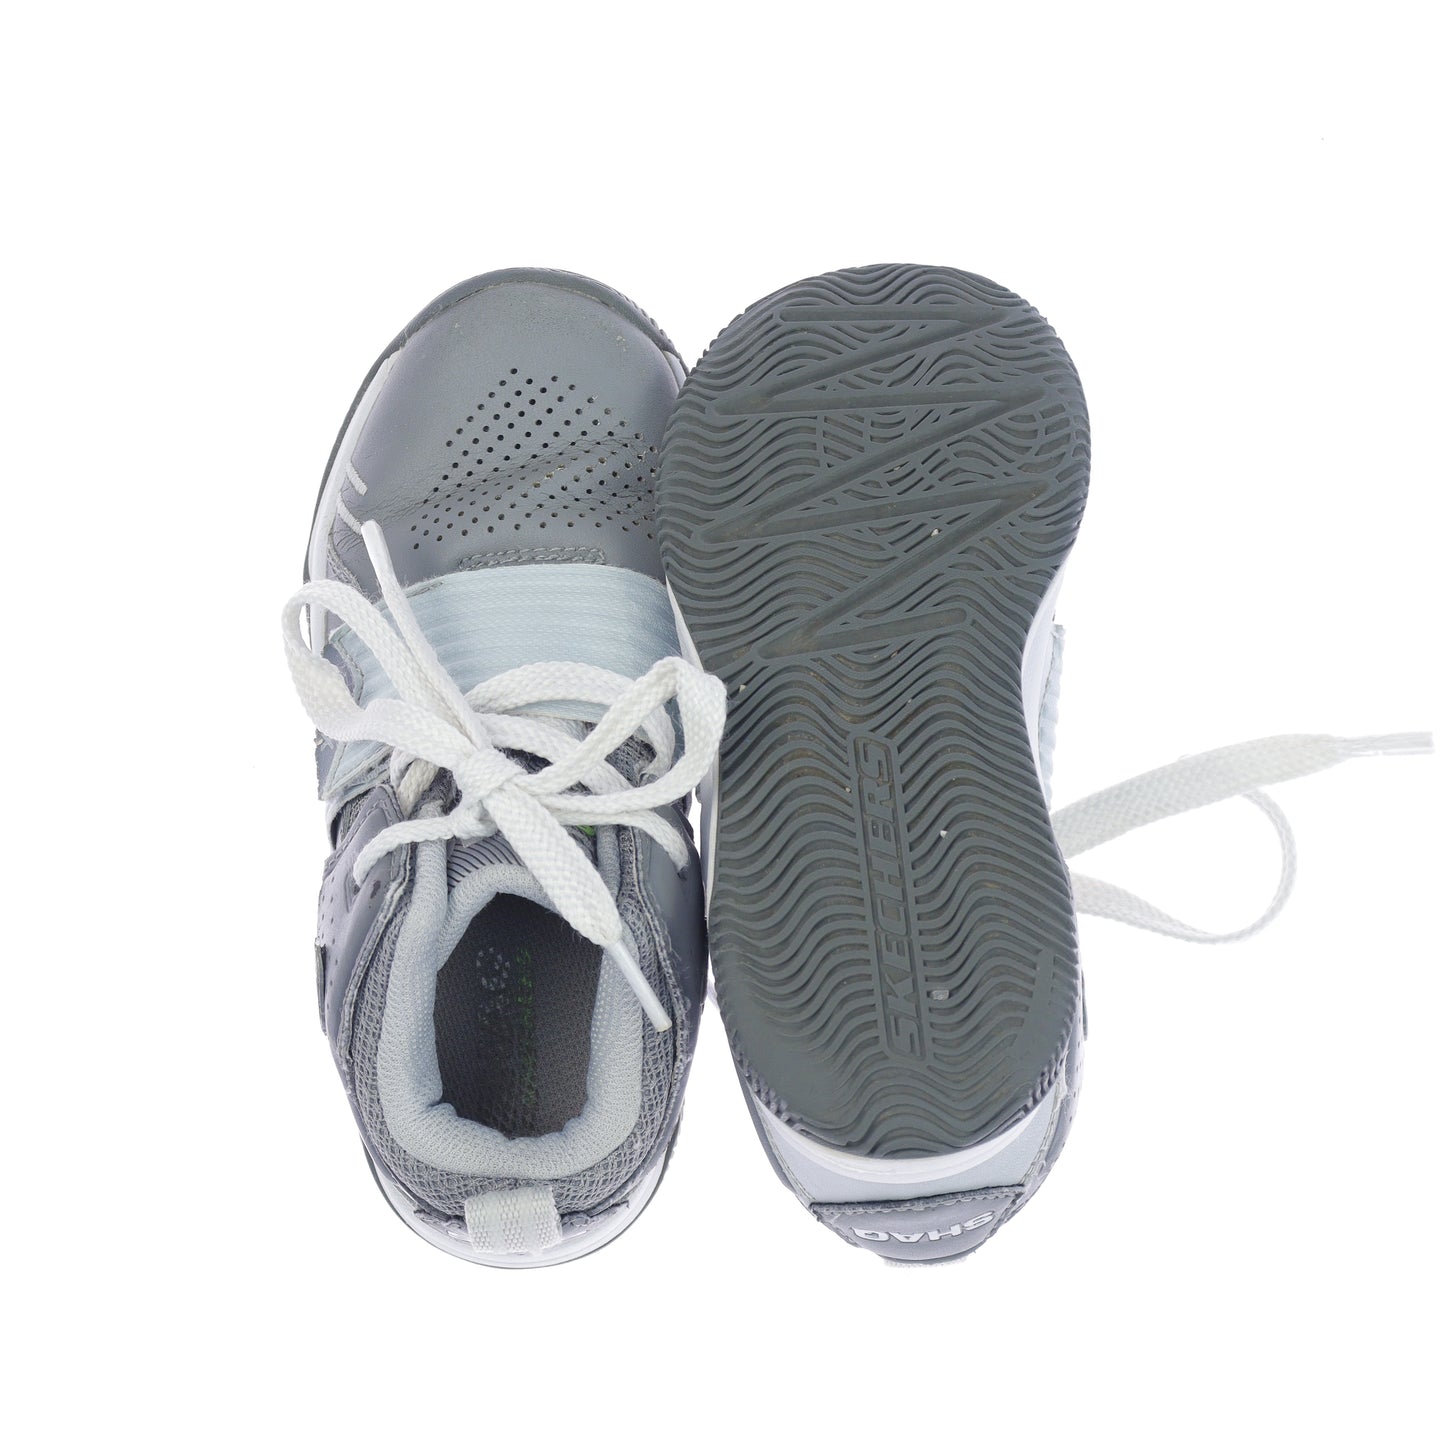 Παπούτσια Skechers (5 ετών - 6 ετών)